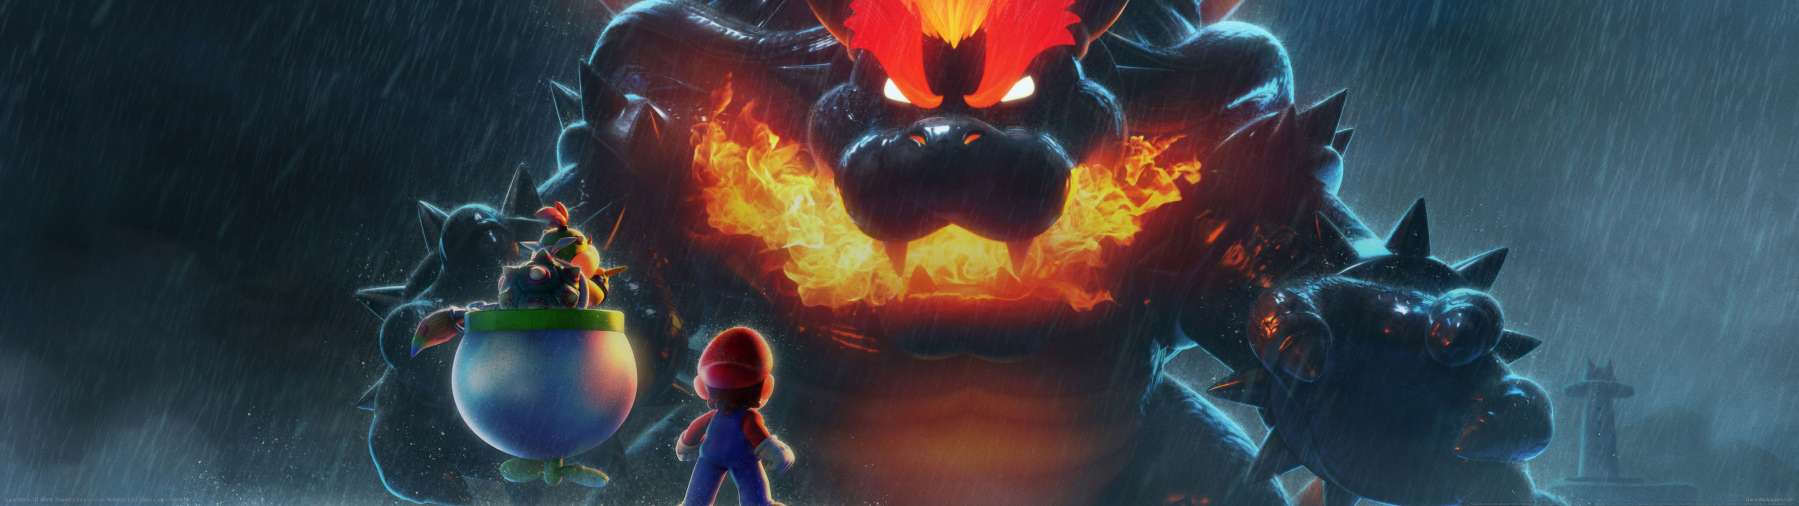 Super Mario 3D World: Bowser's Fury fond d'cran